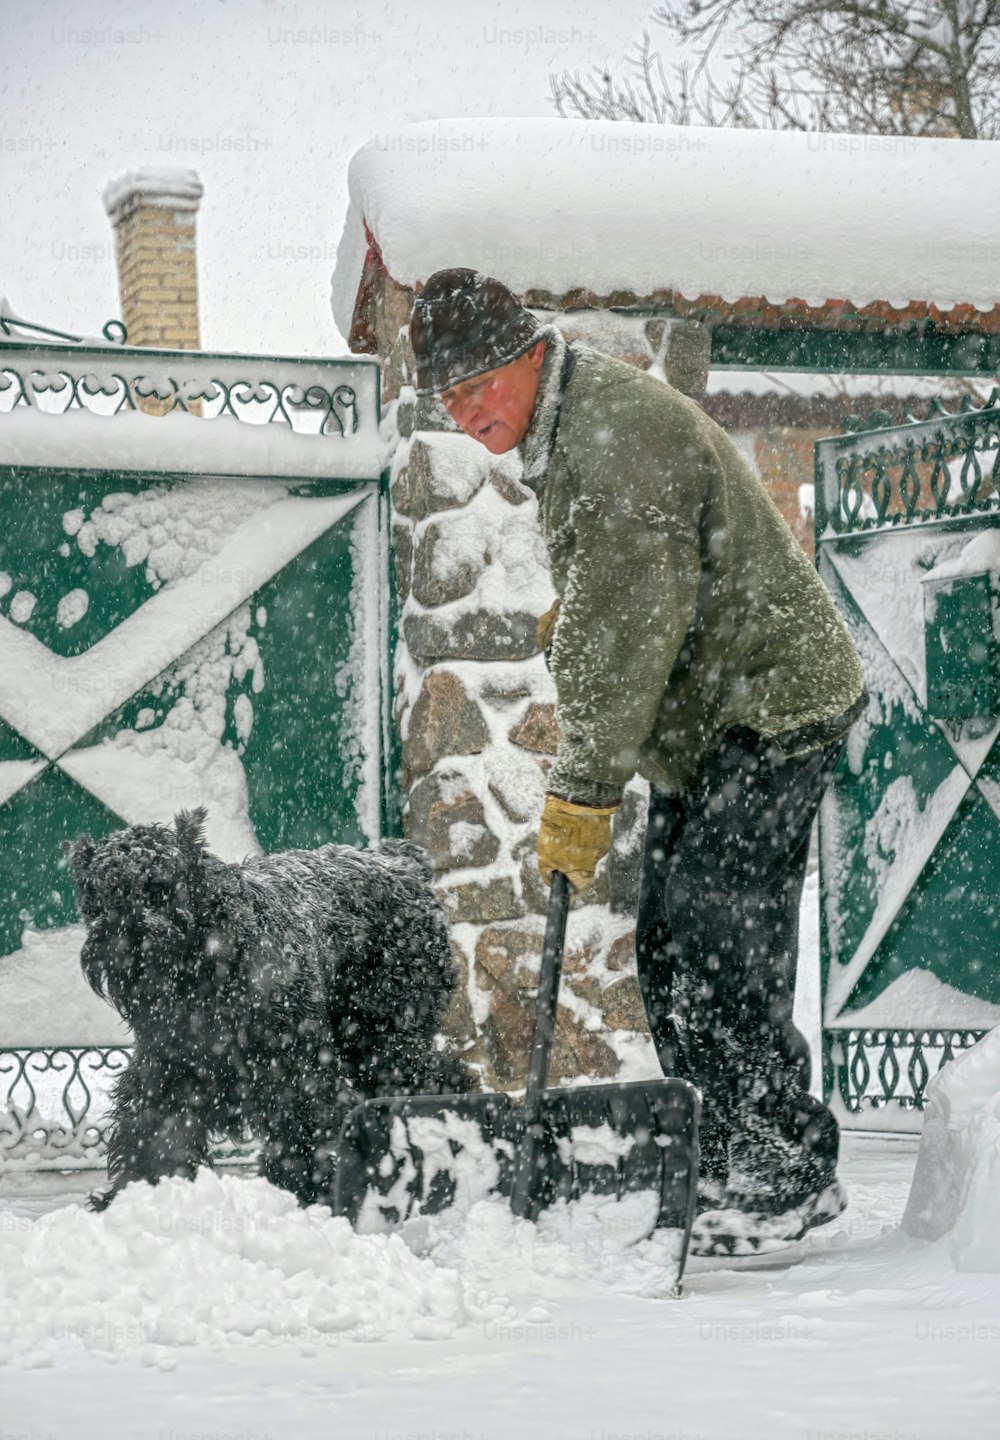 homem idoso com uma pá nas mãos limpa a rua depois de uma forte nevasca. Homem no trabalho sazonal